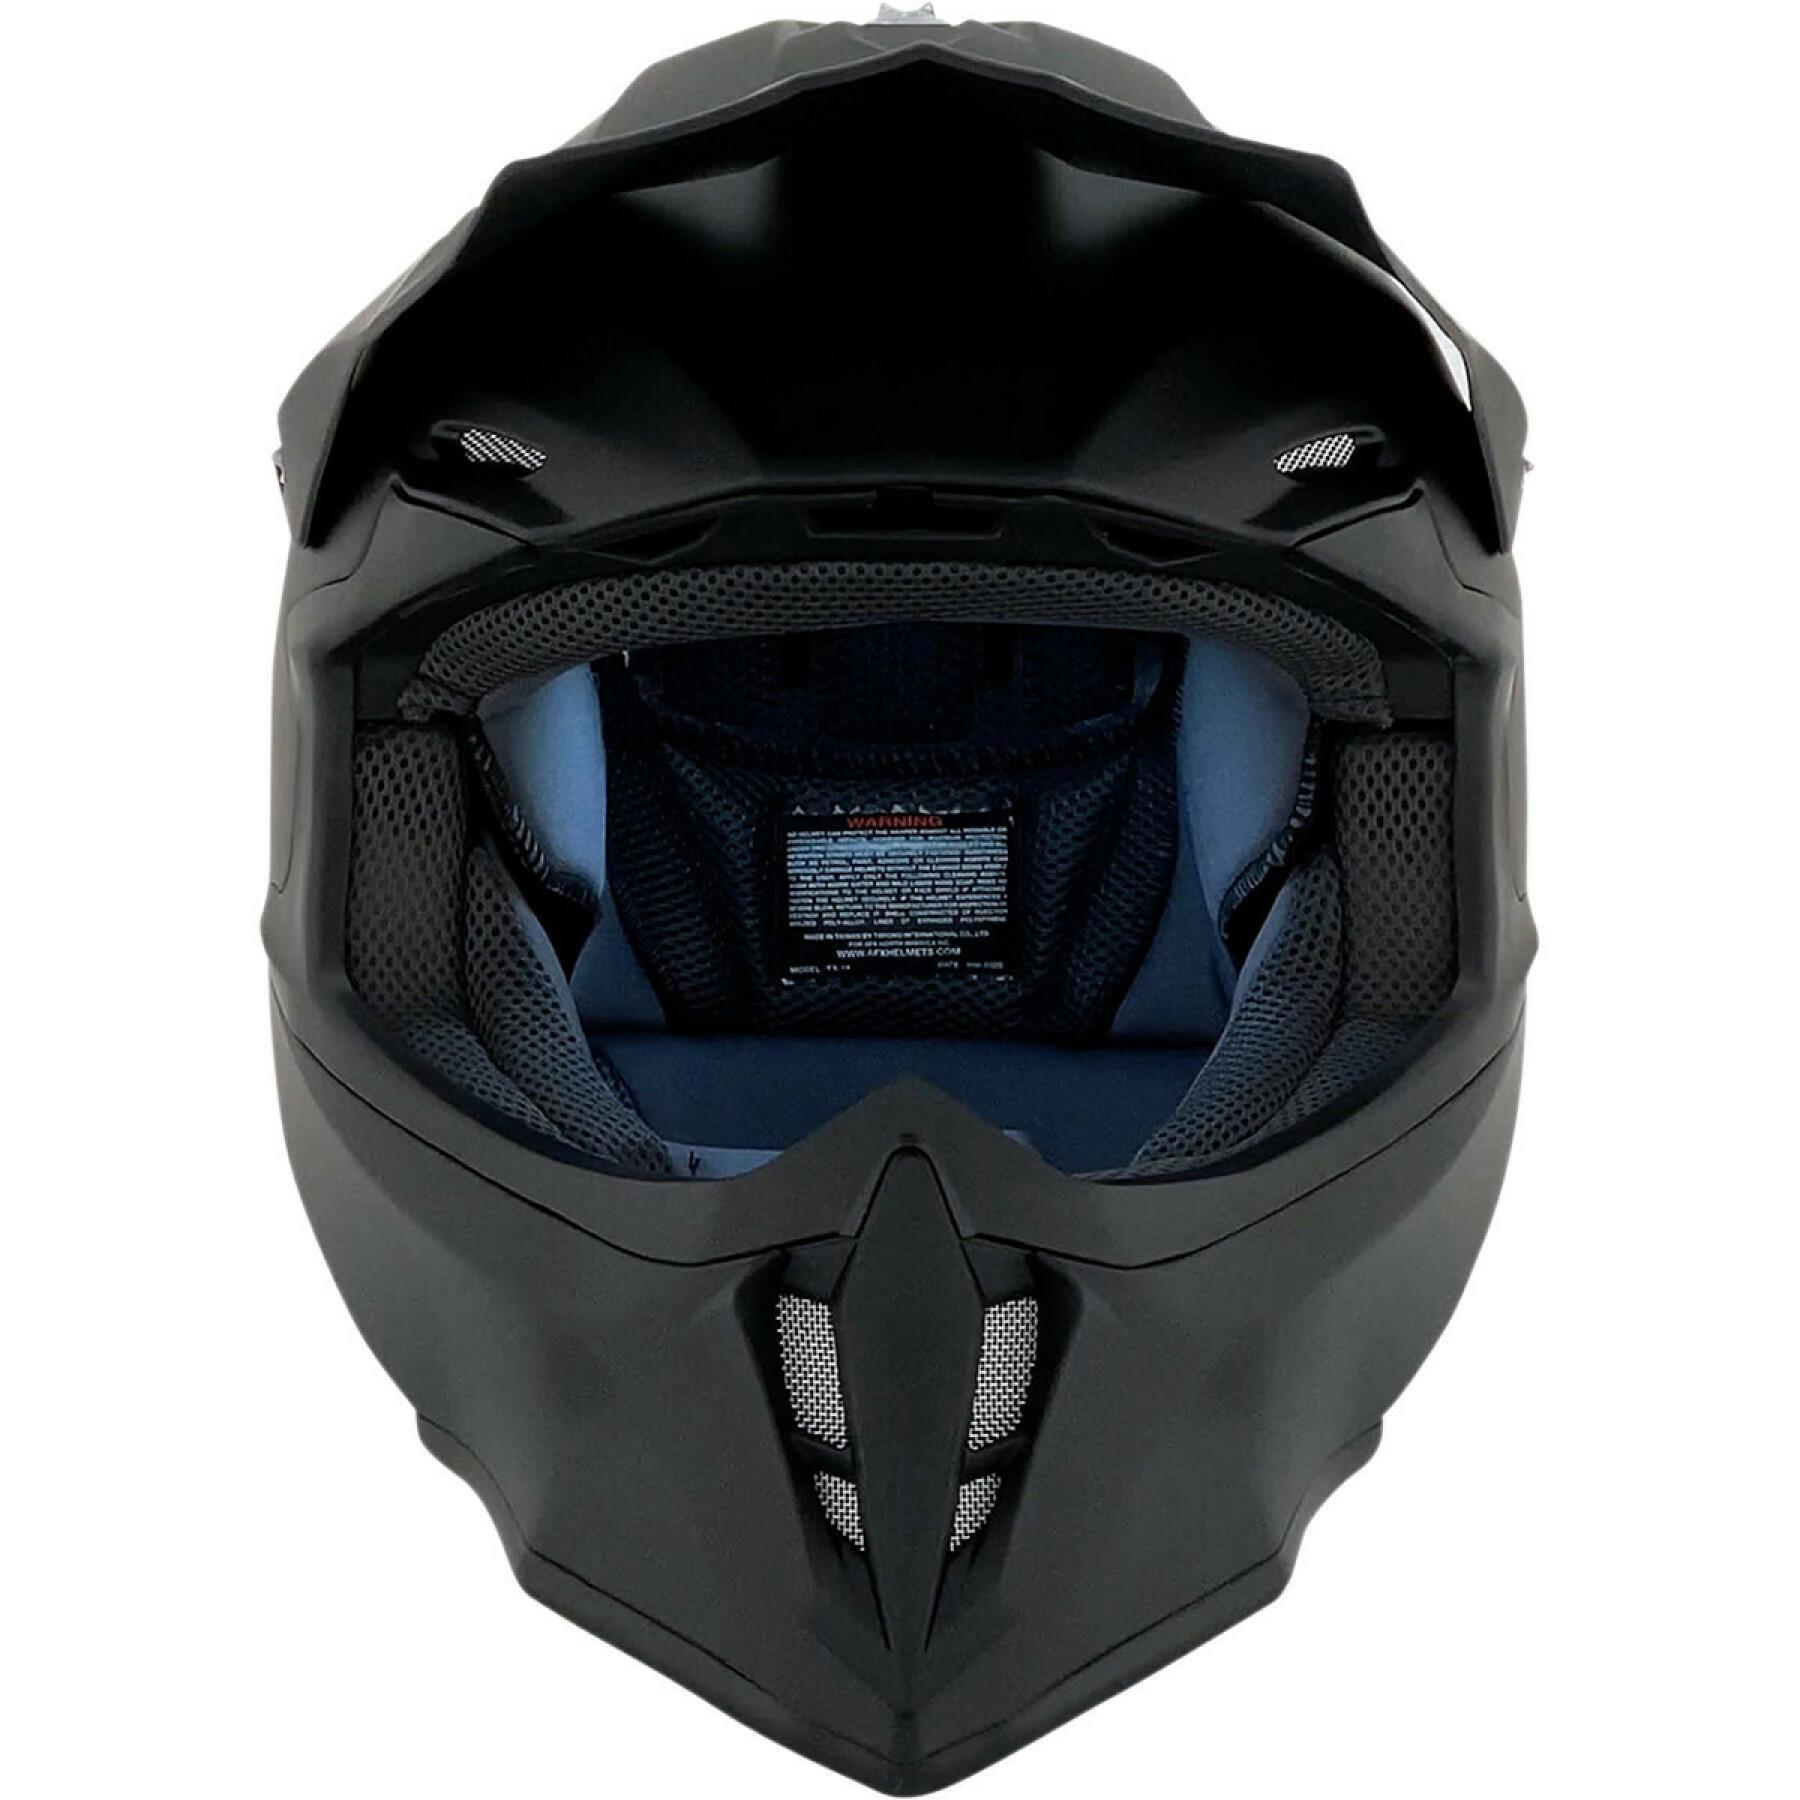 Motorcycle helmet AFX fx14